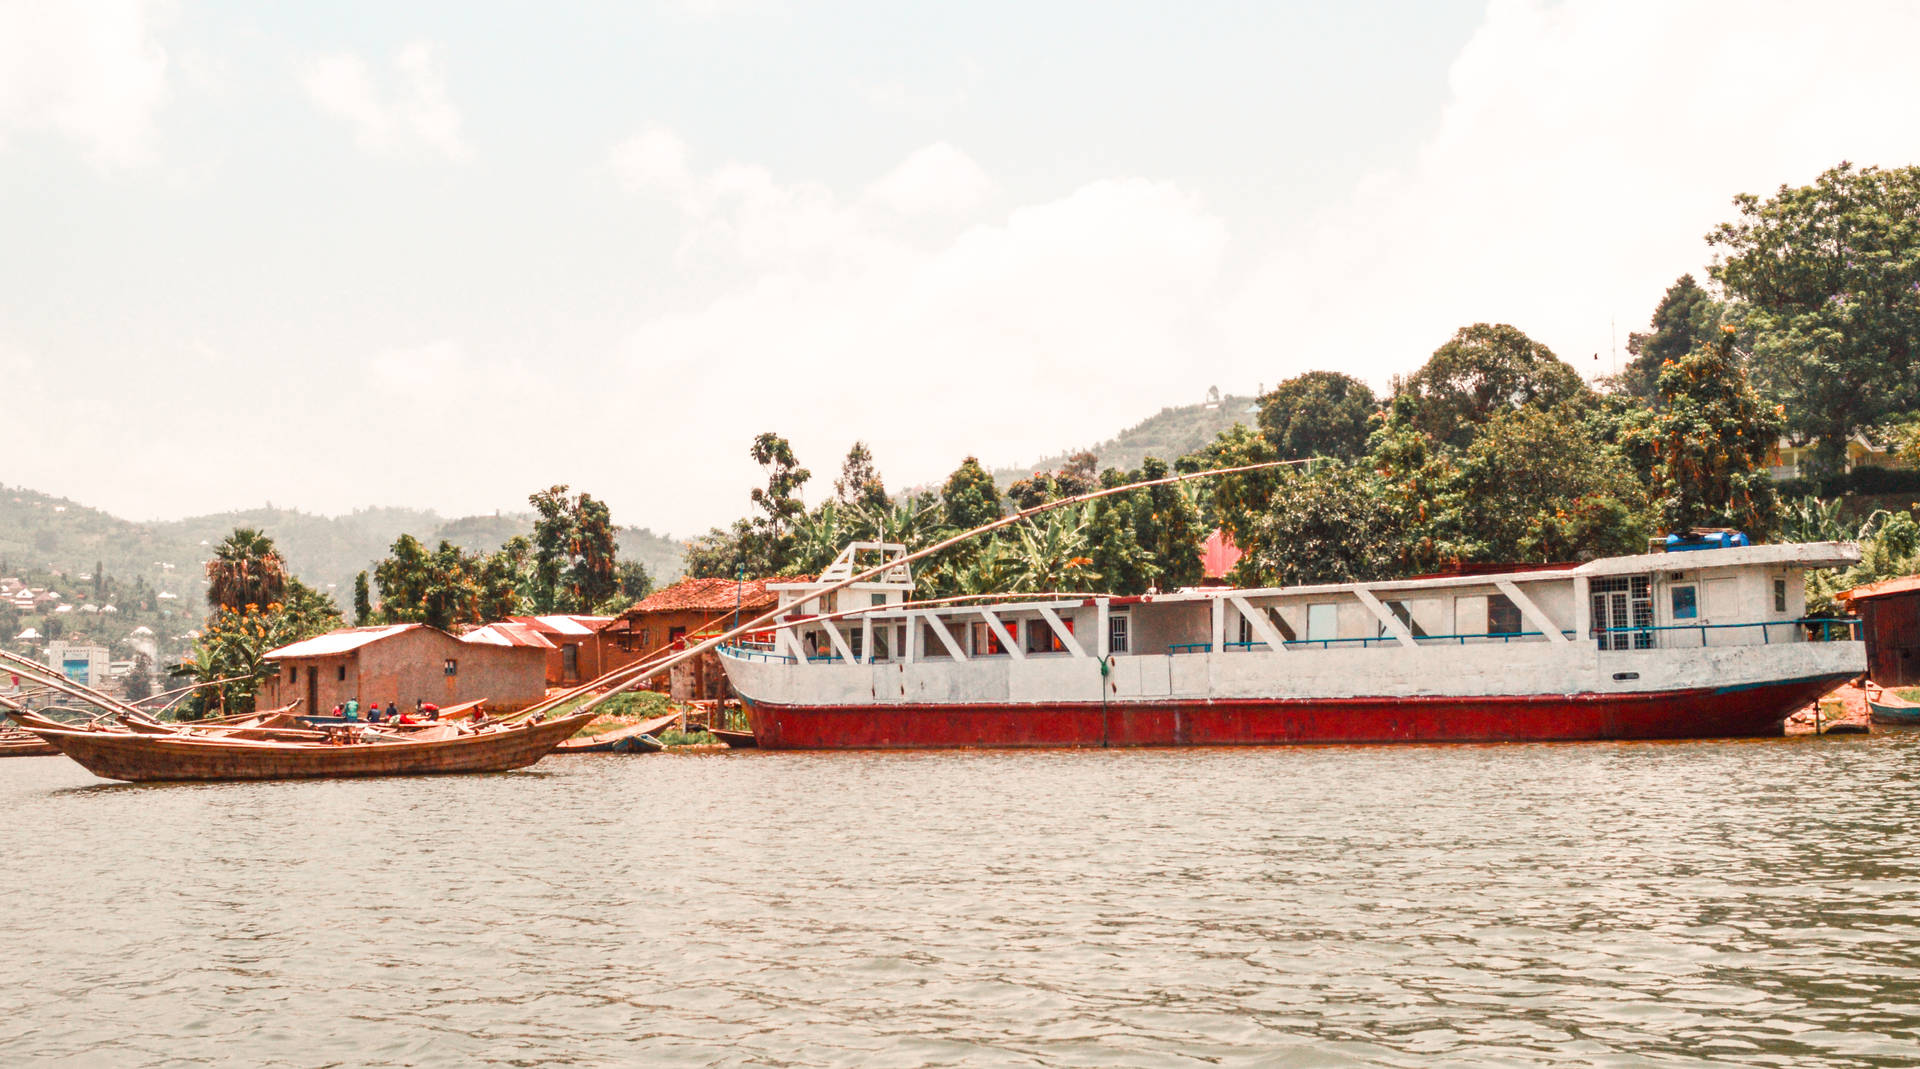 Rwanda Boats In Water Wallpaper